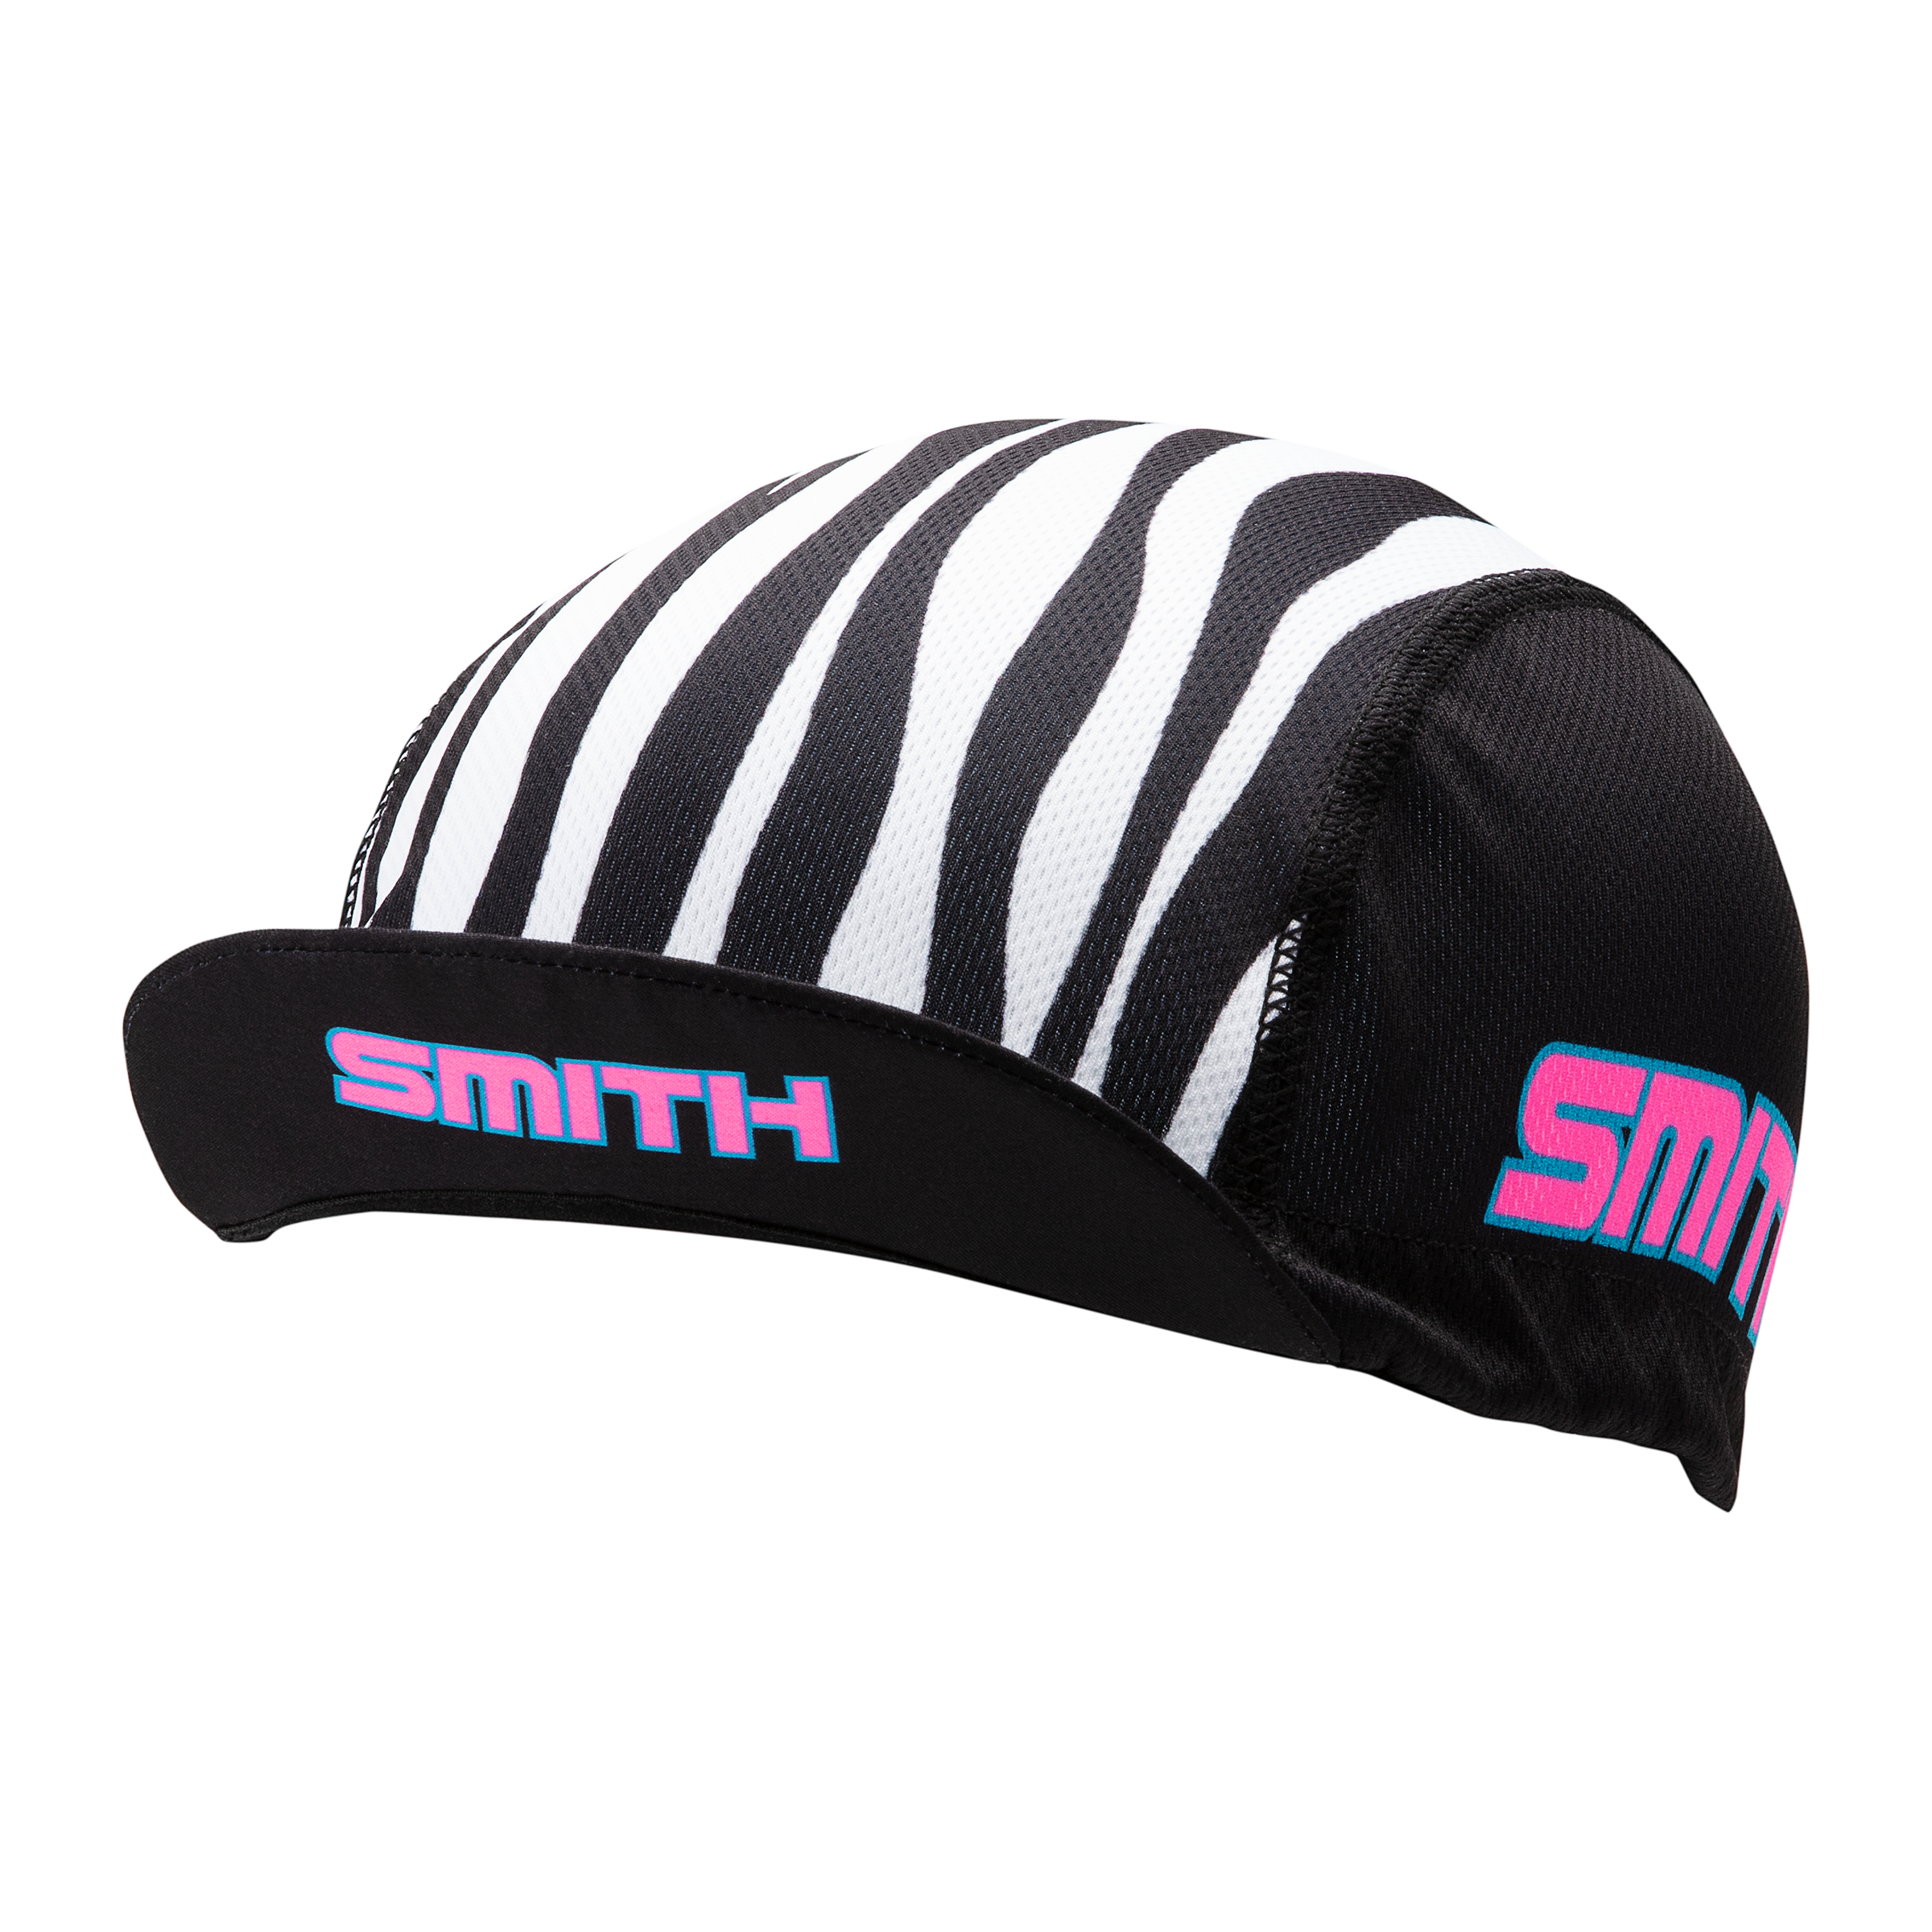 smith cycling cap